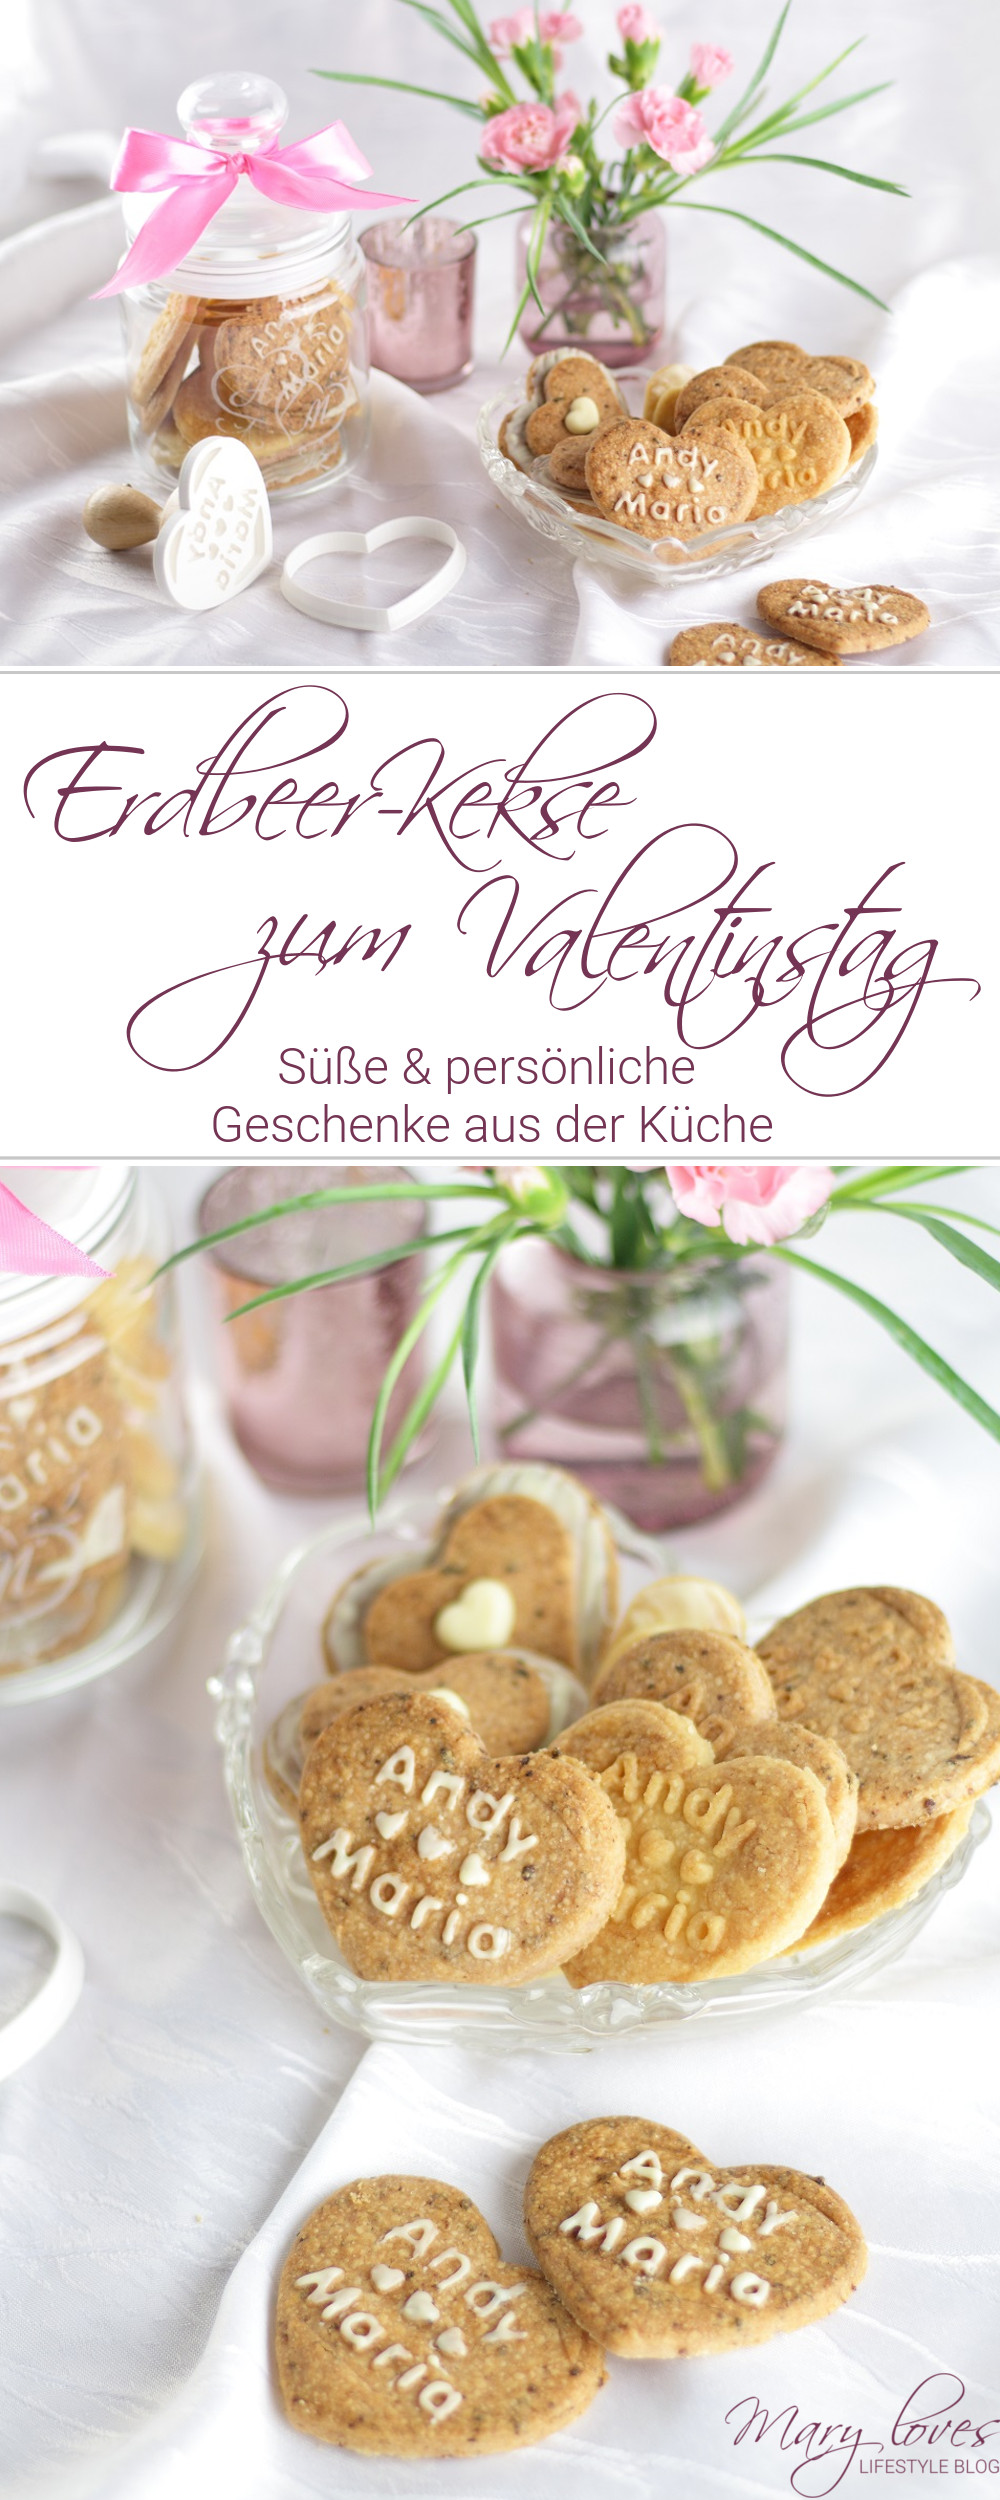 [Anzeige] Personalisierte Geschenke aus der Küche - Erdbeer-Kekse zum Valentinstag - #geschenkausderküche #küchengeschenk #erdbeerkekse #kekse #plätzchen #valentinstag #geschenkidee